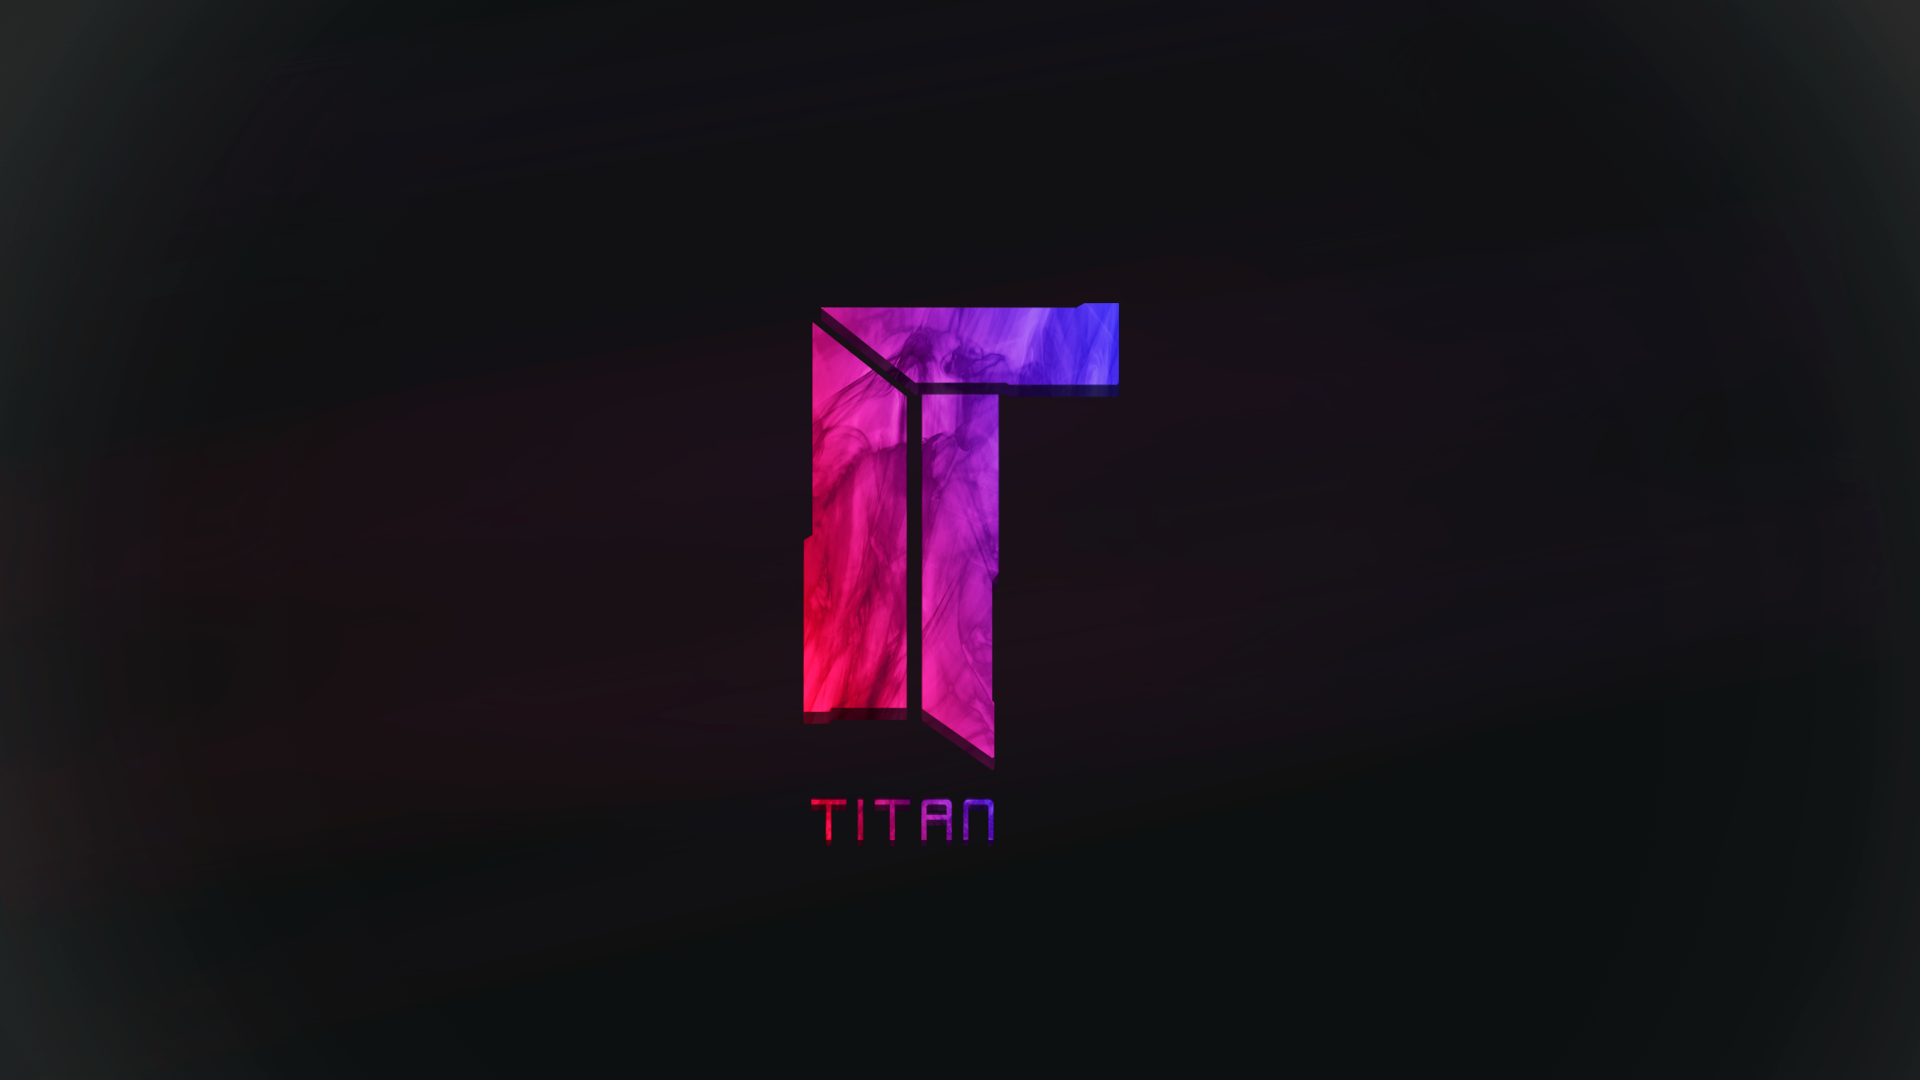 Titan CS GO Wallpaper